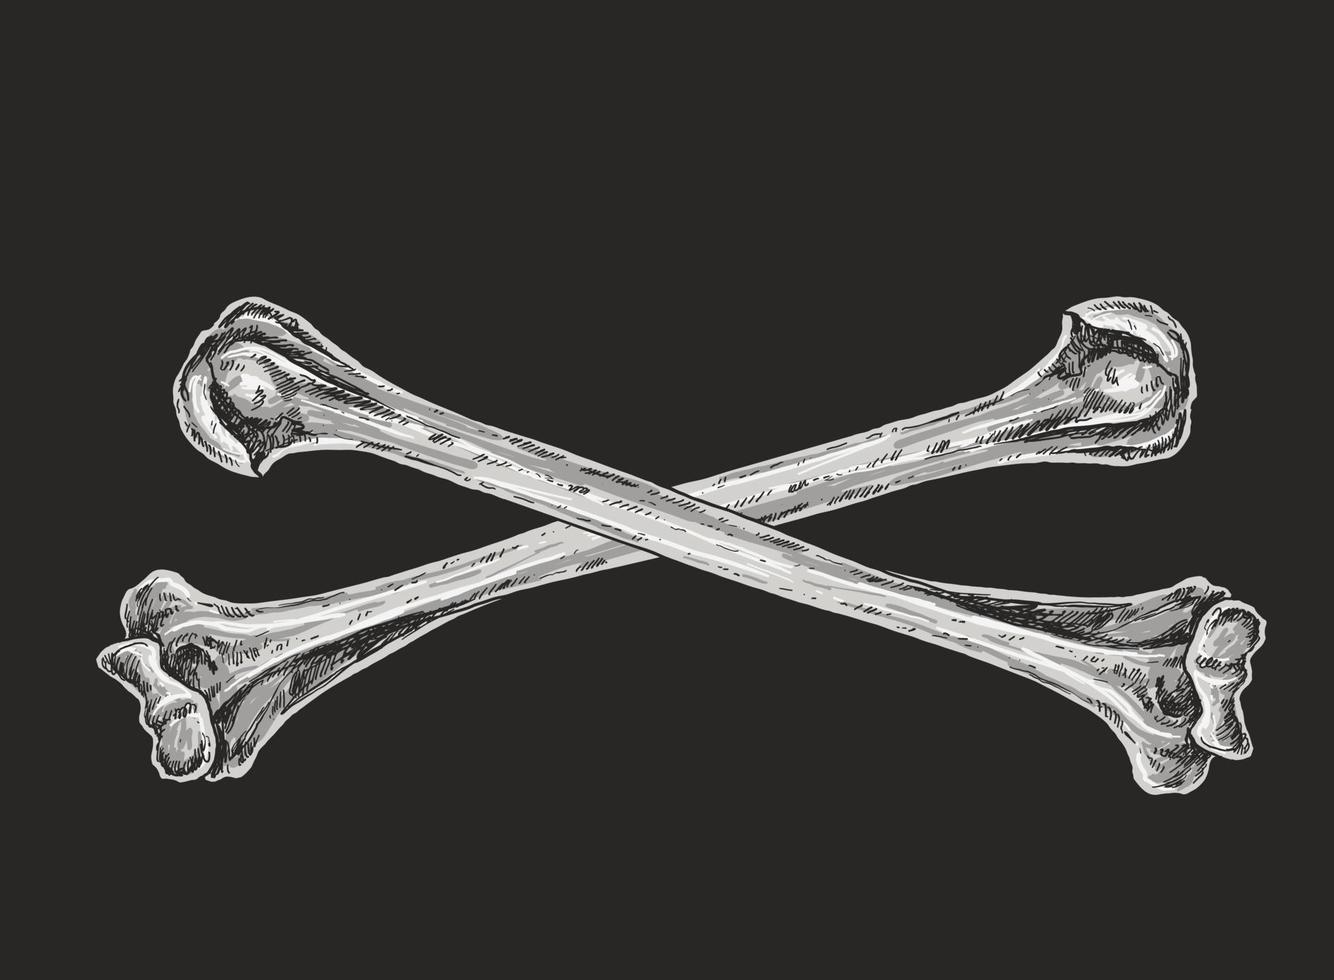 Skull and Crossbones Drawing Illustration vector